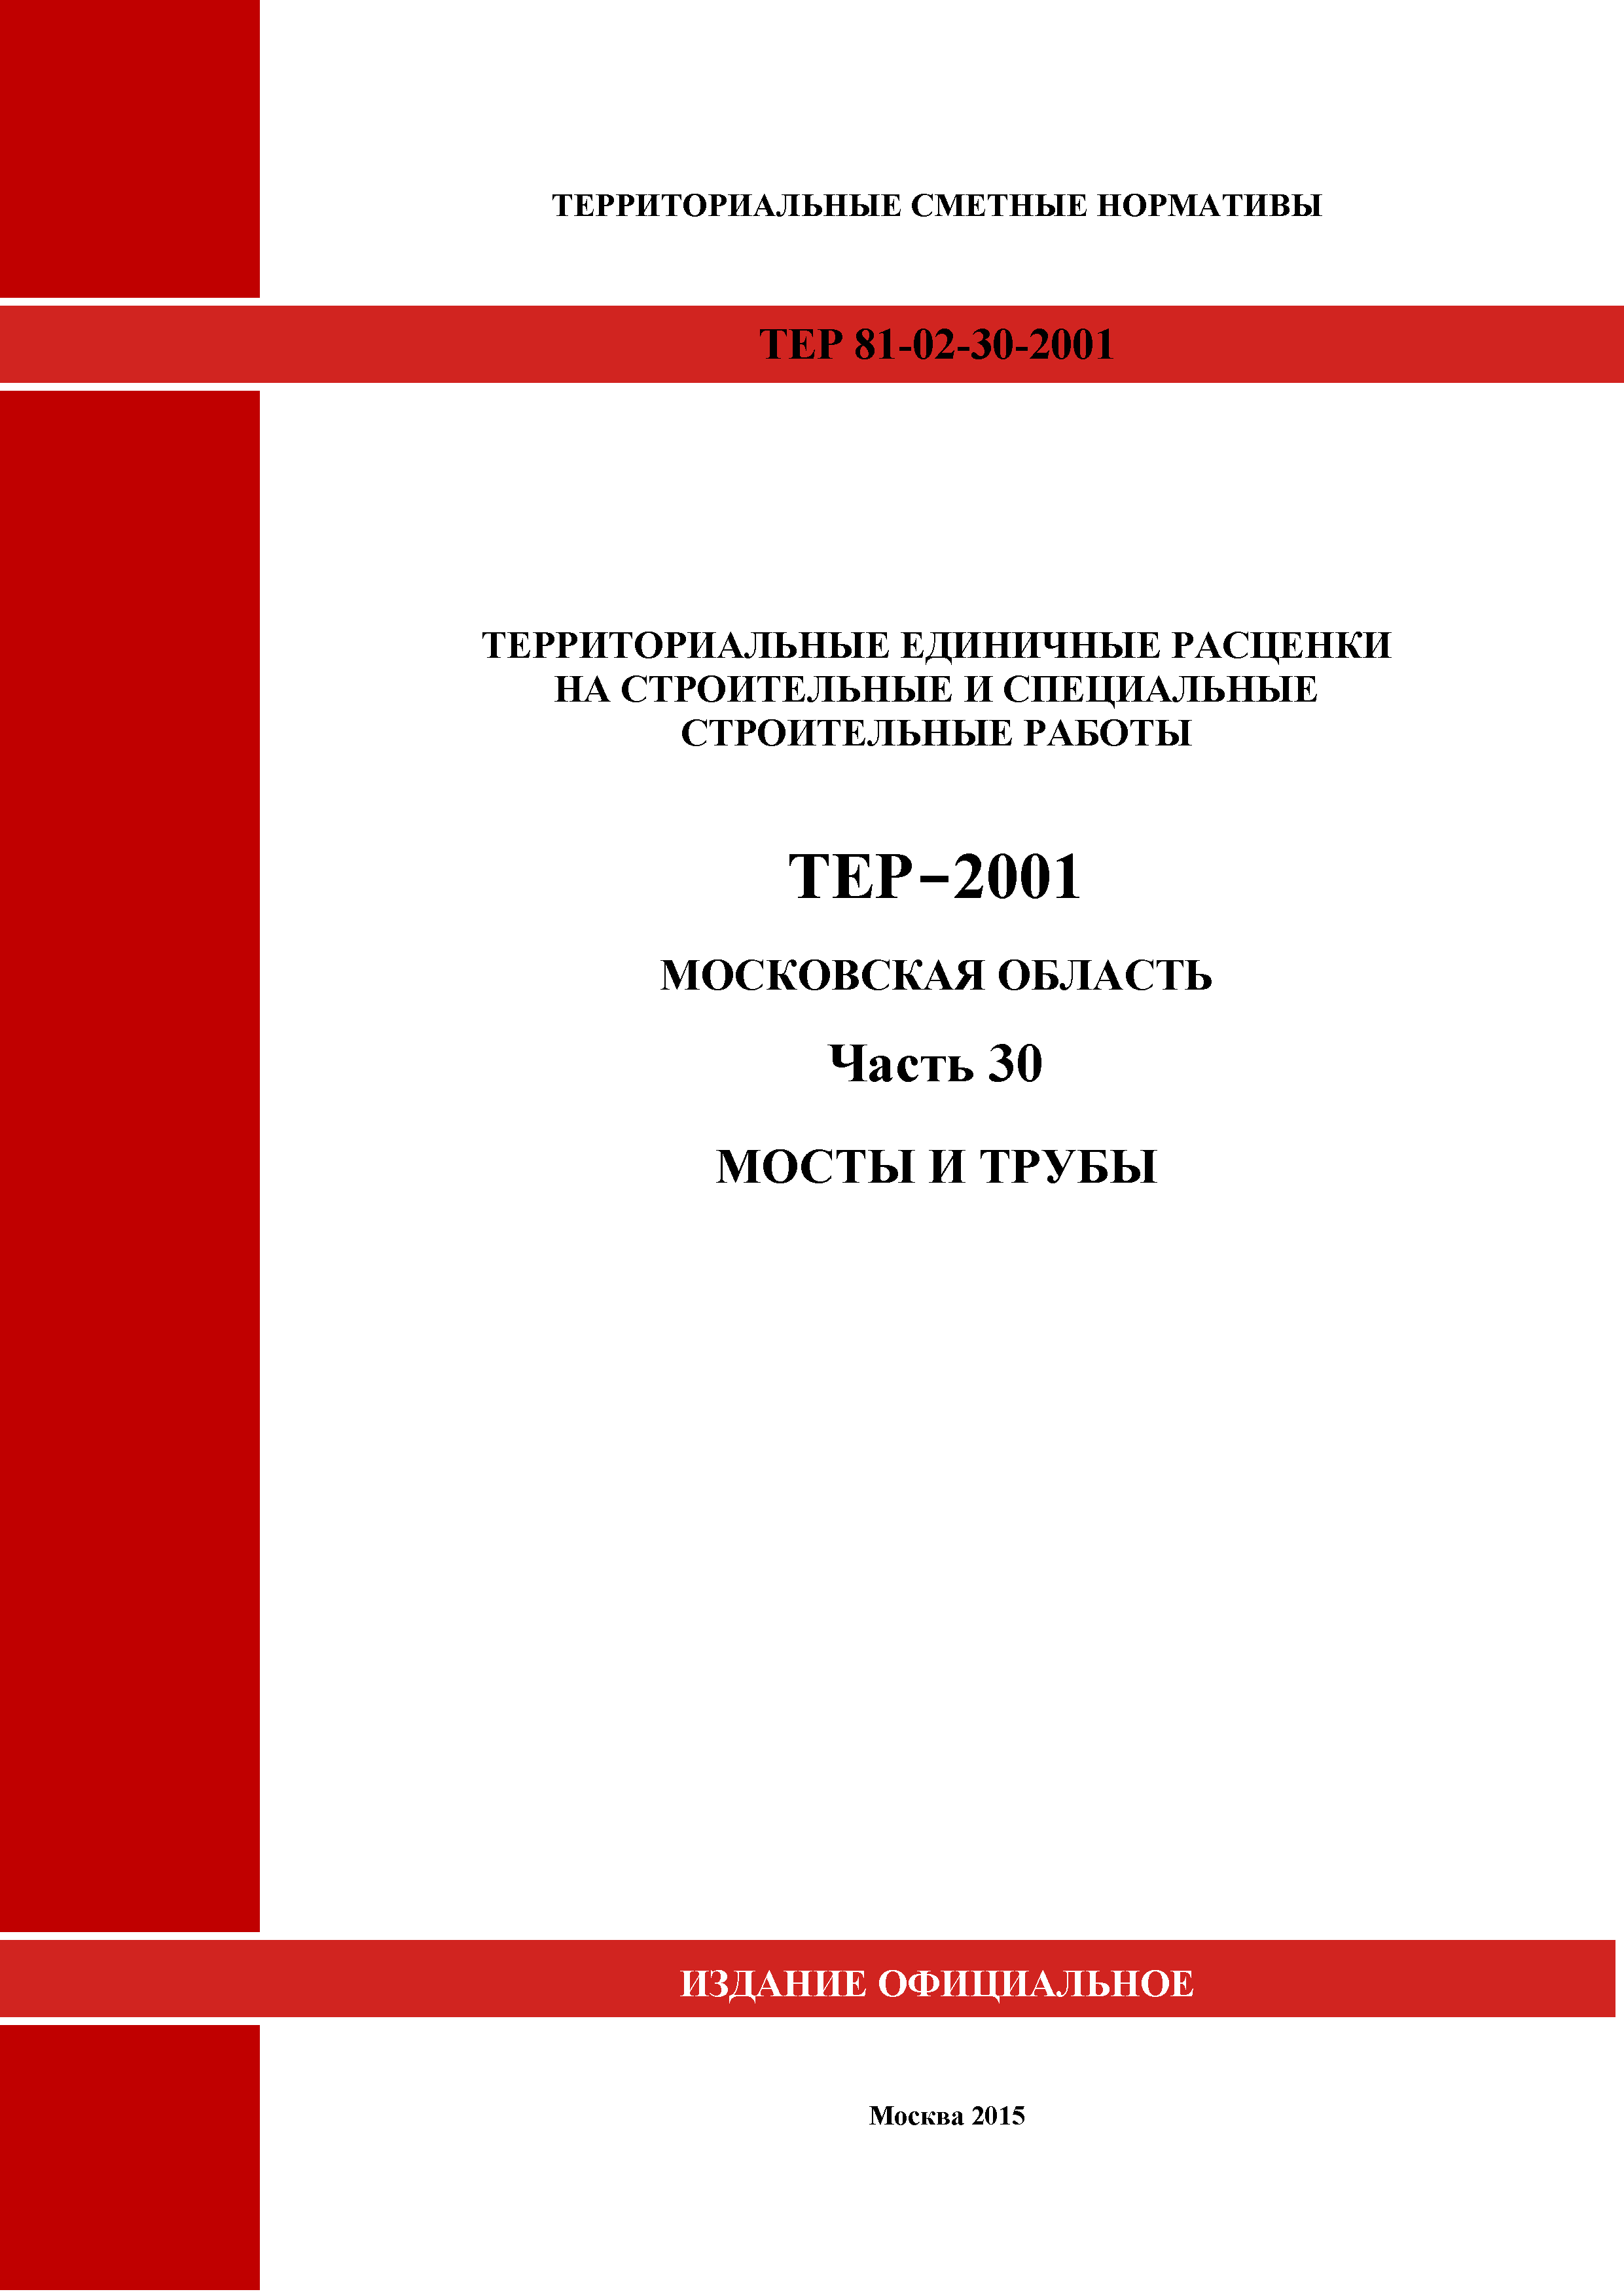 ТЕР 30-2001 Московской области